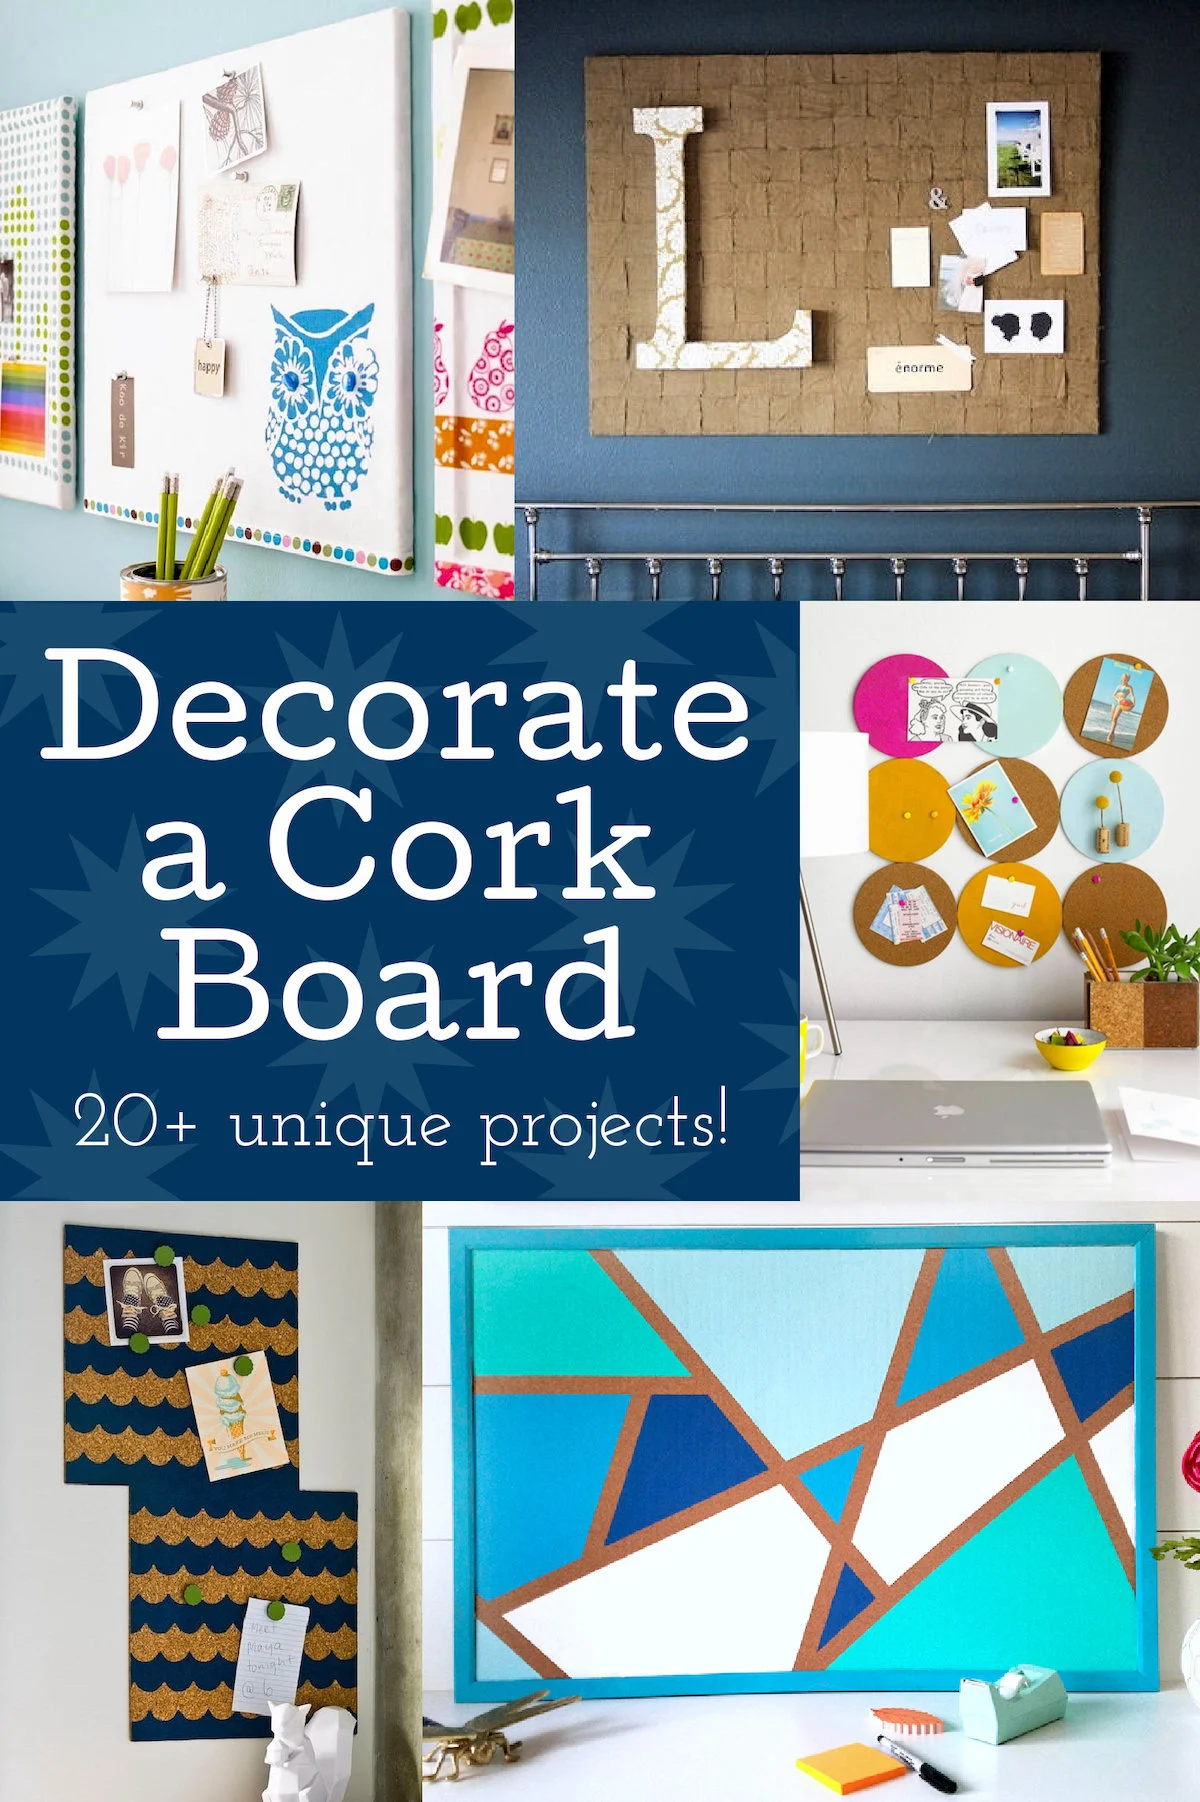 5 Fun Ways To Decorate Your Basic Cork Board